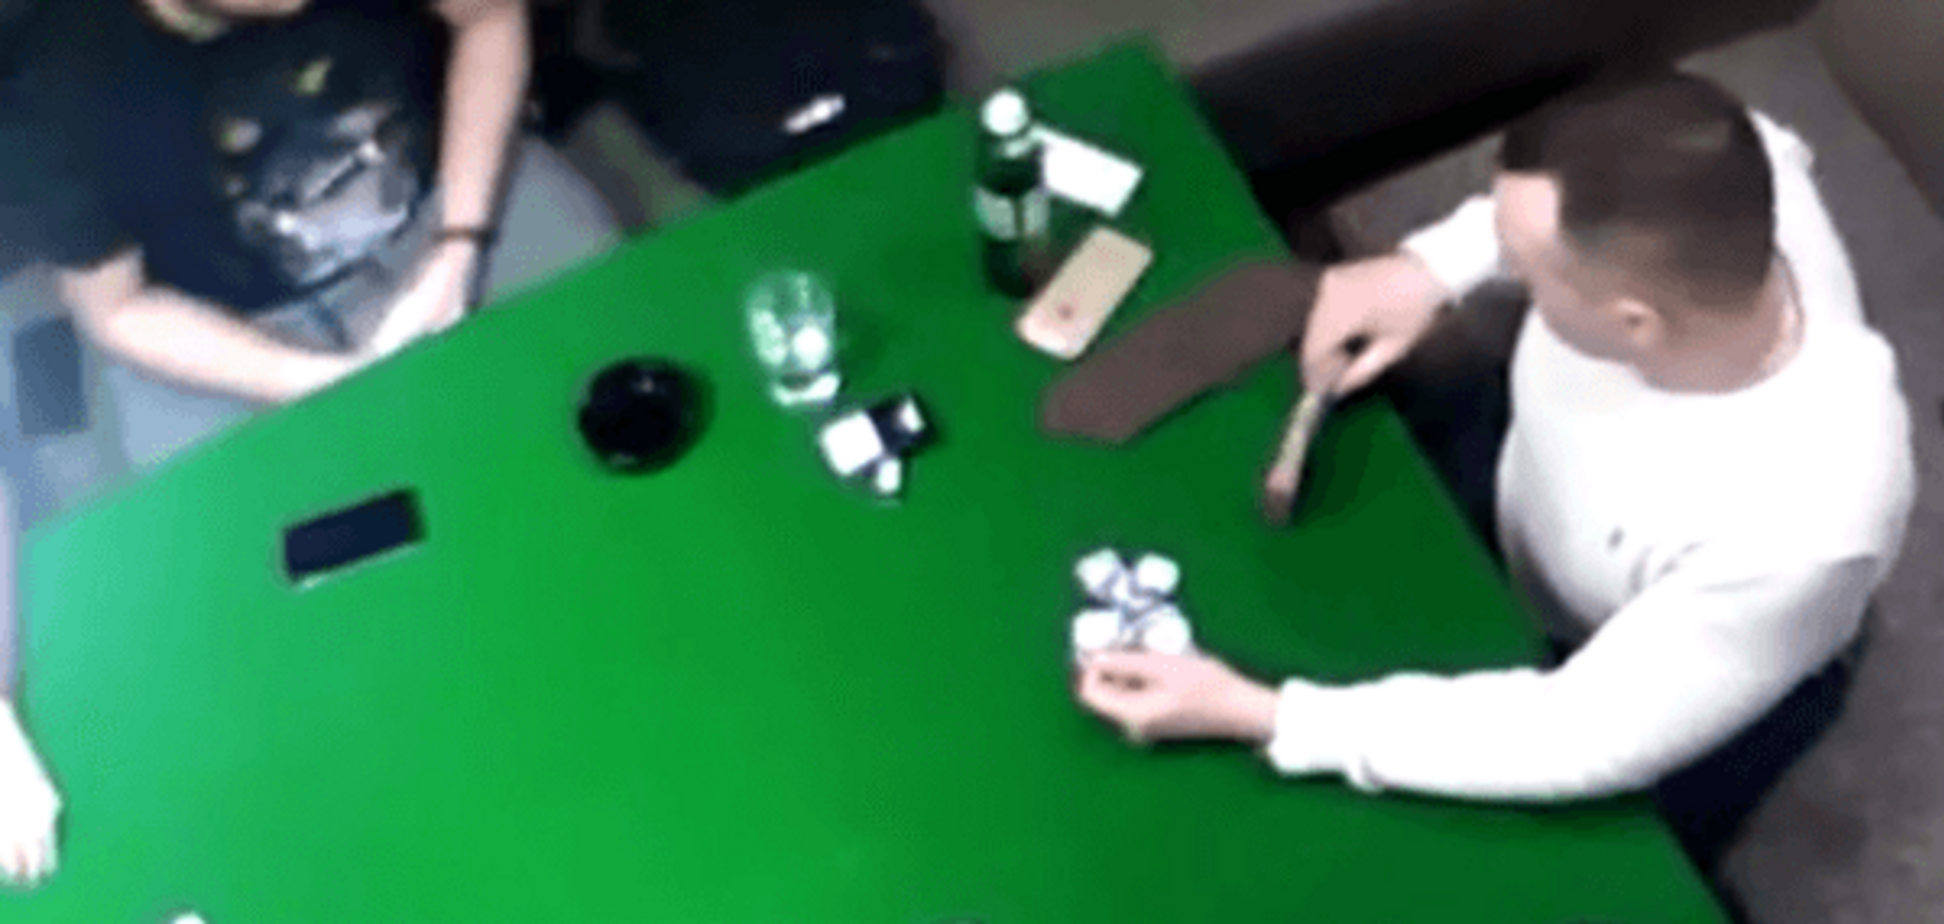 З'явилося відео з нібито сином Авакова, який грає в покер і курить траву